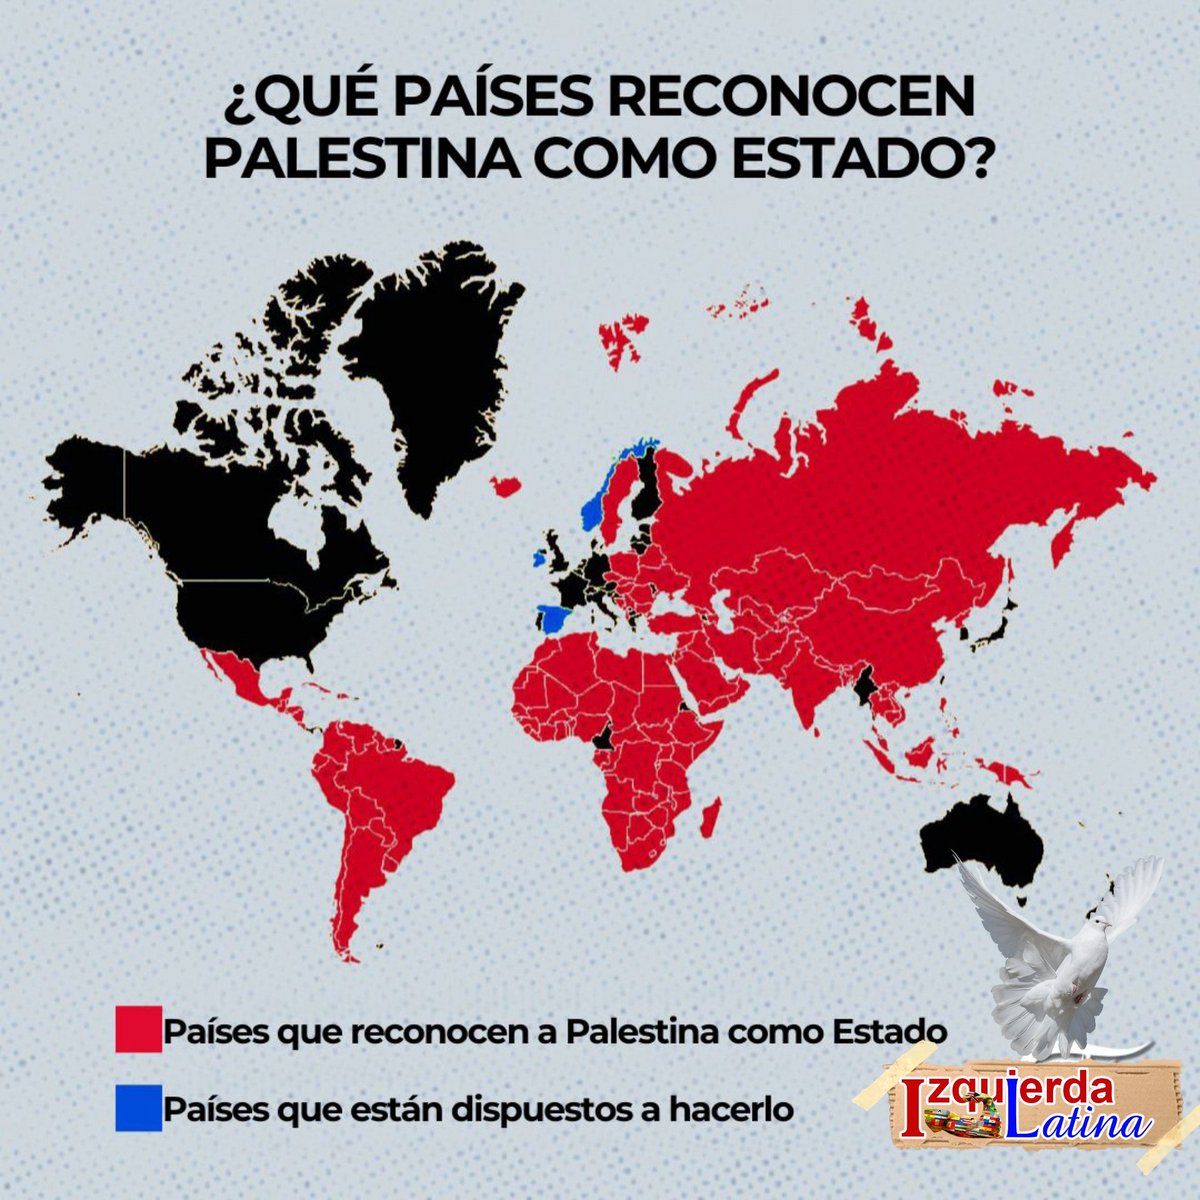 Hoy 143 países del mundo reconocen a Palestina 🇵🇸 como Estado independiente, y se van sumando otros. Y como responde 🗣 La Casa Blanca: el Estado palestino no debe lograrse por 'reconocimiento unilateral' UNILATERAL dice! #PalestinaNoEstáSola